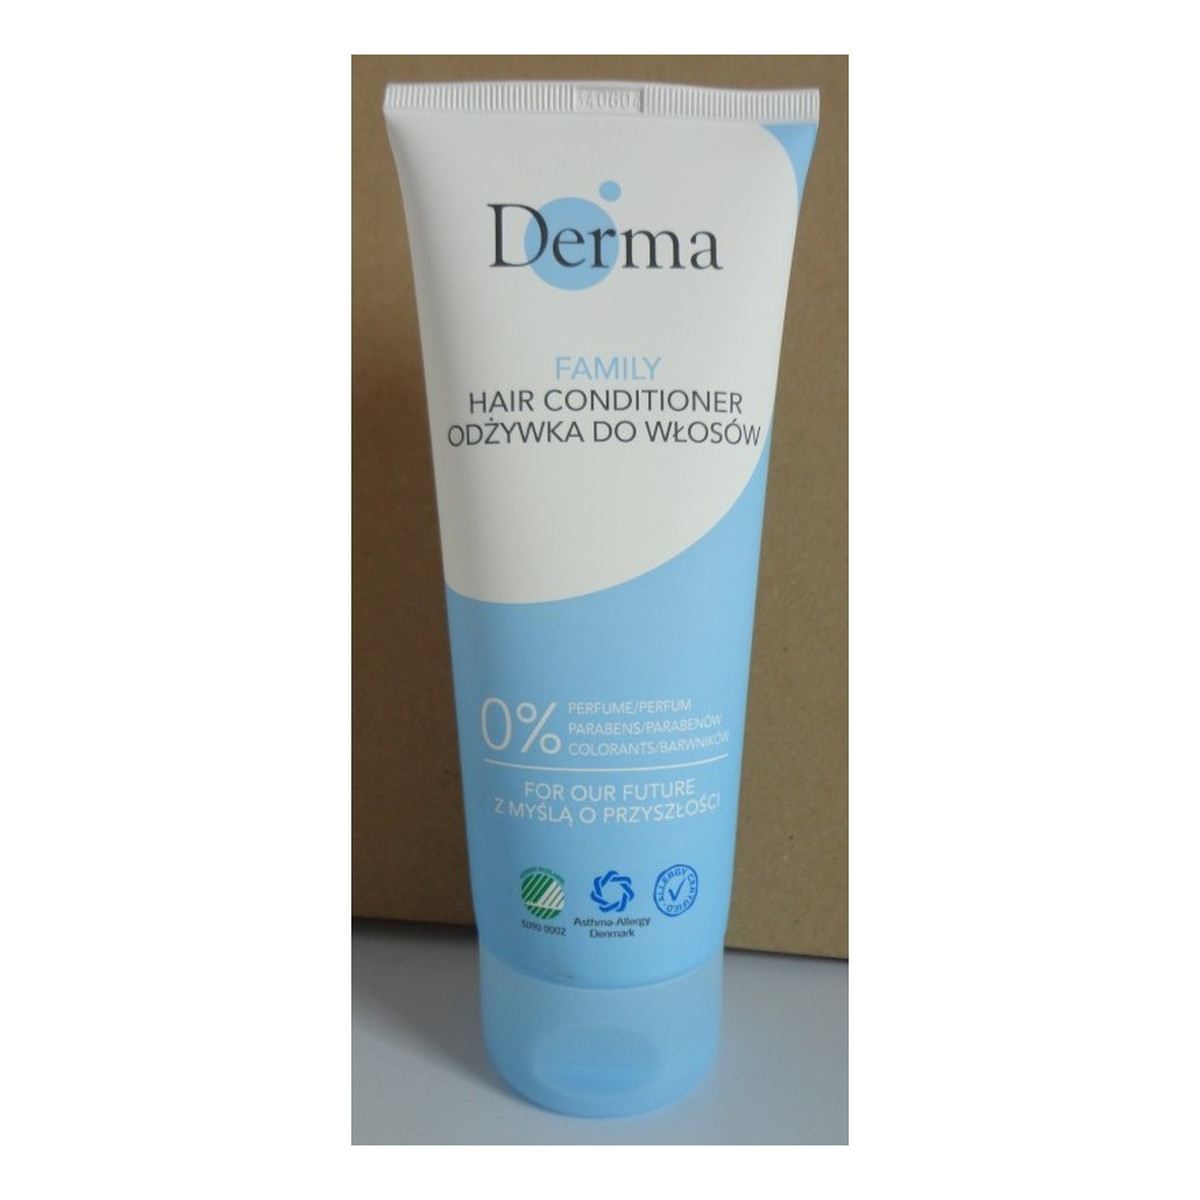 Derma Family Hair Conditioner odżywka do włosów 200ml